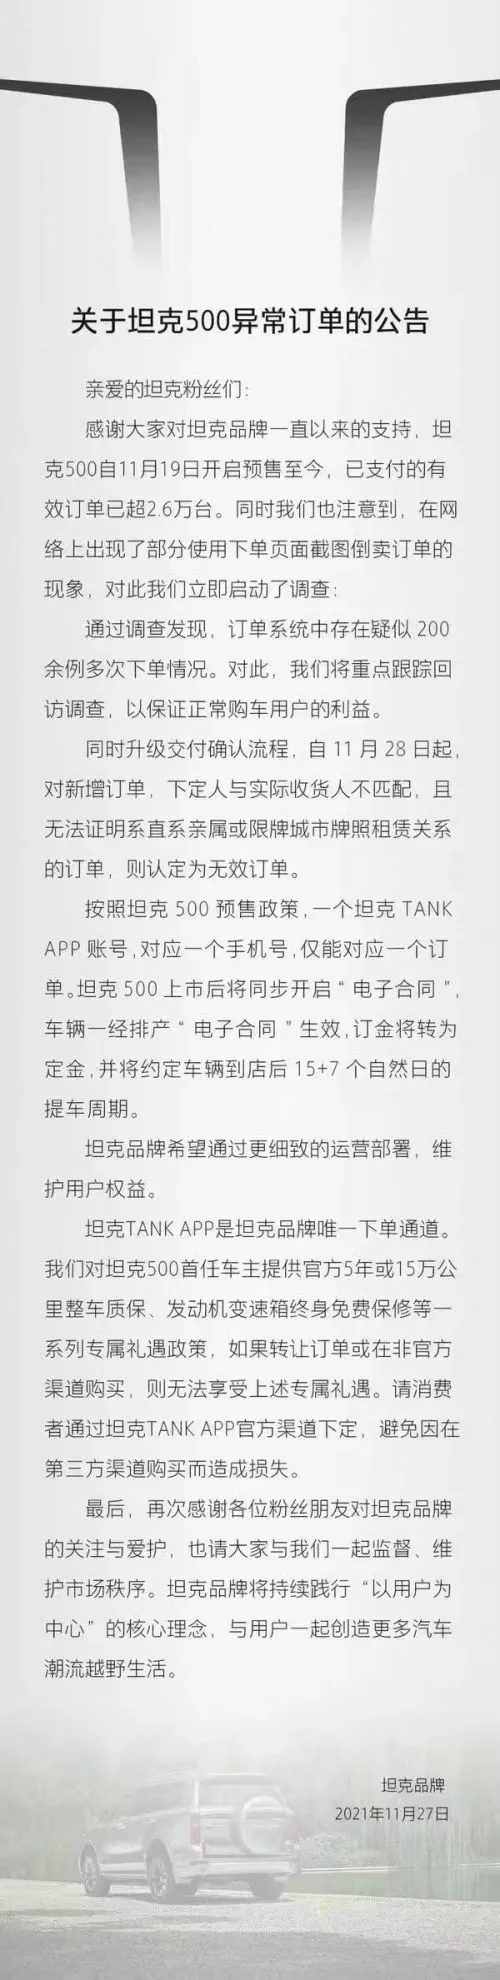 长城坦克发布《关于坦克500异常订单公告》